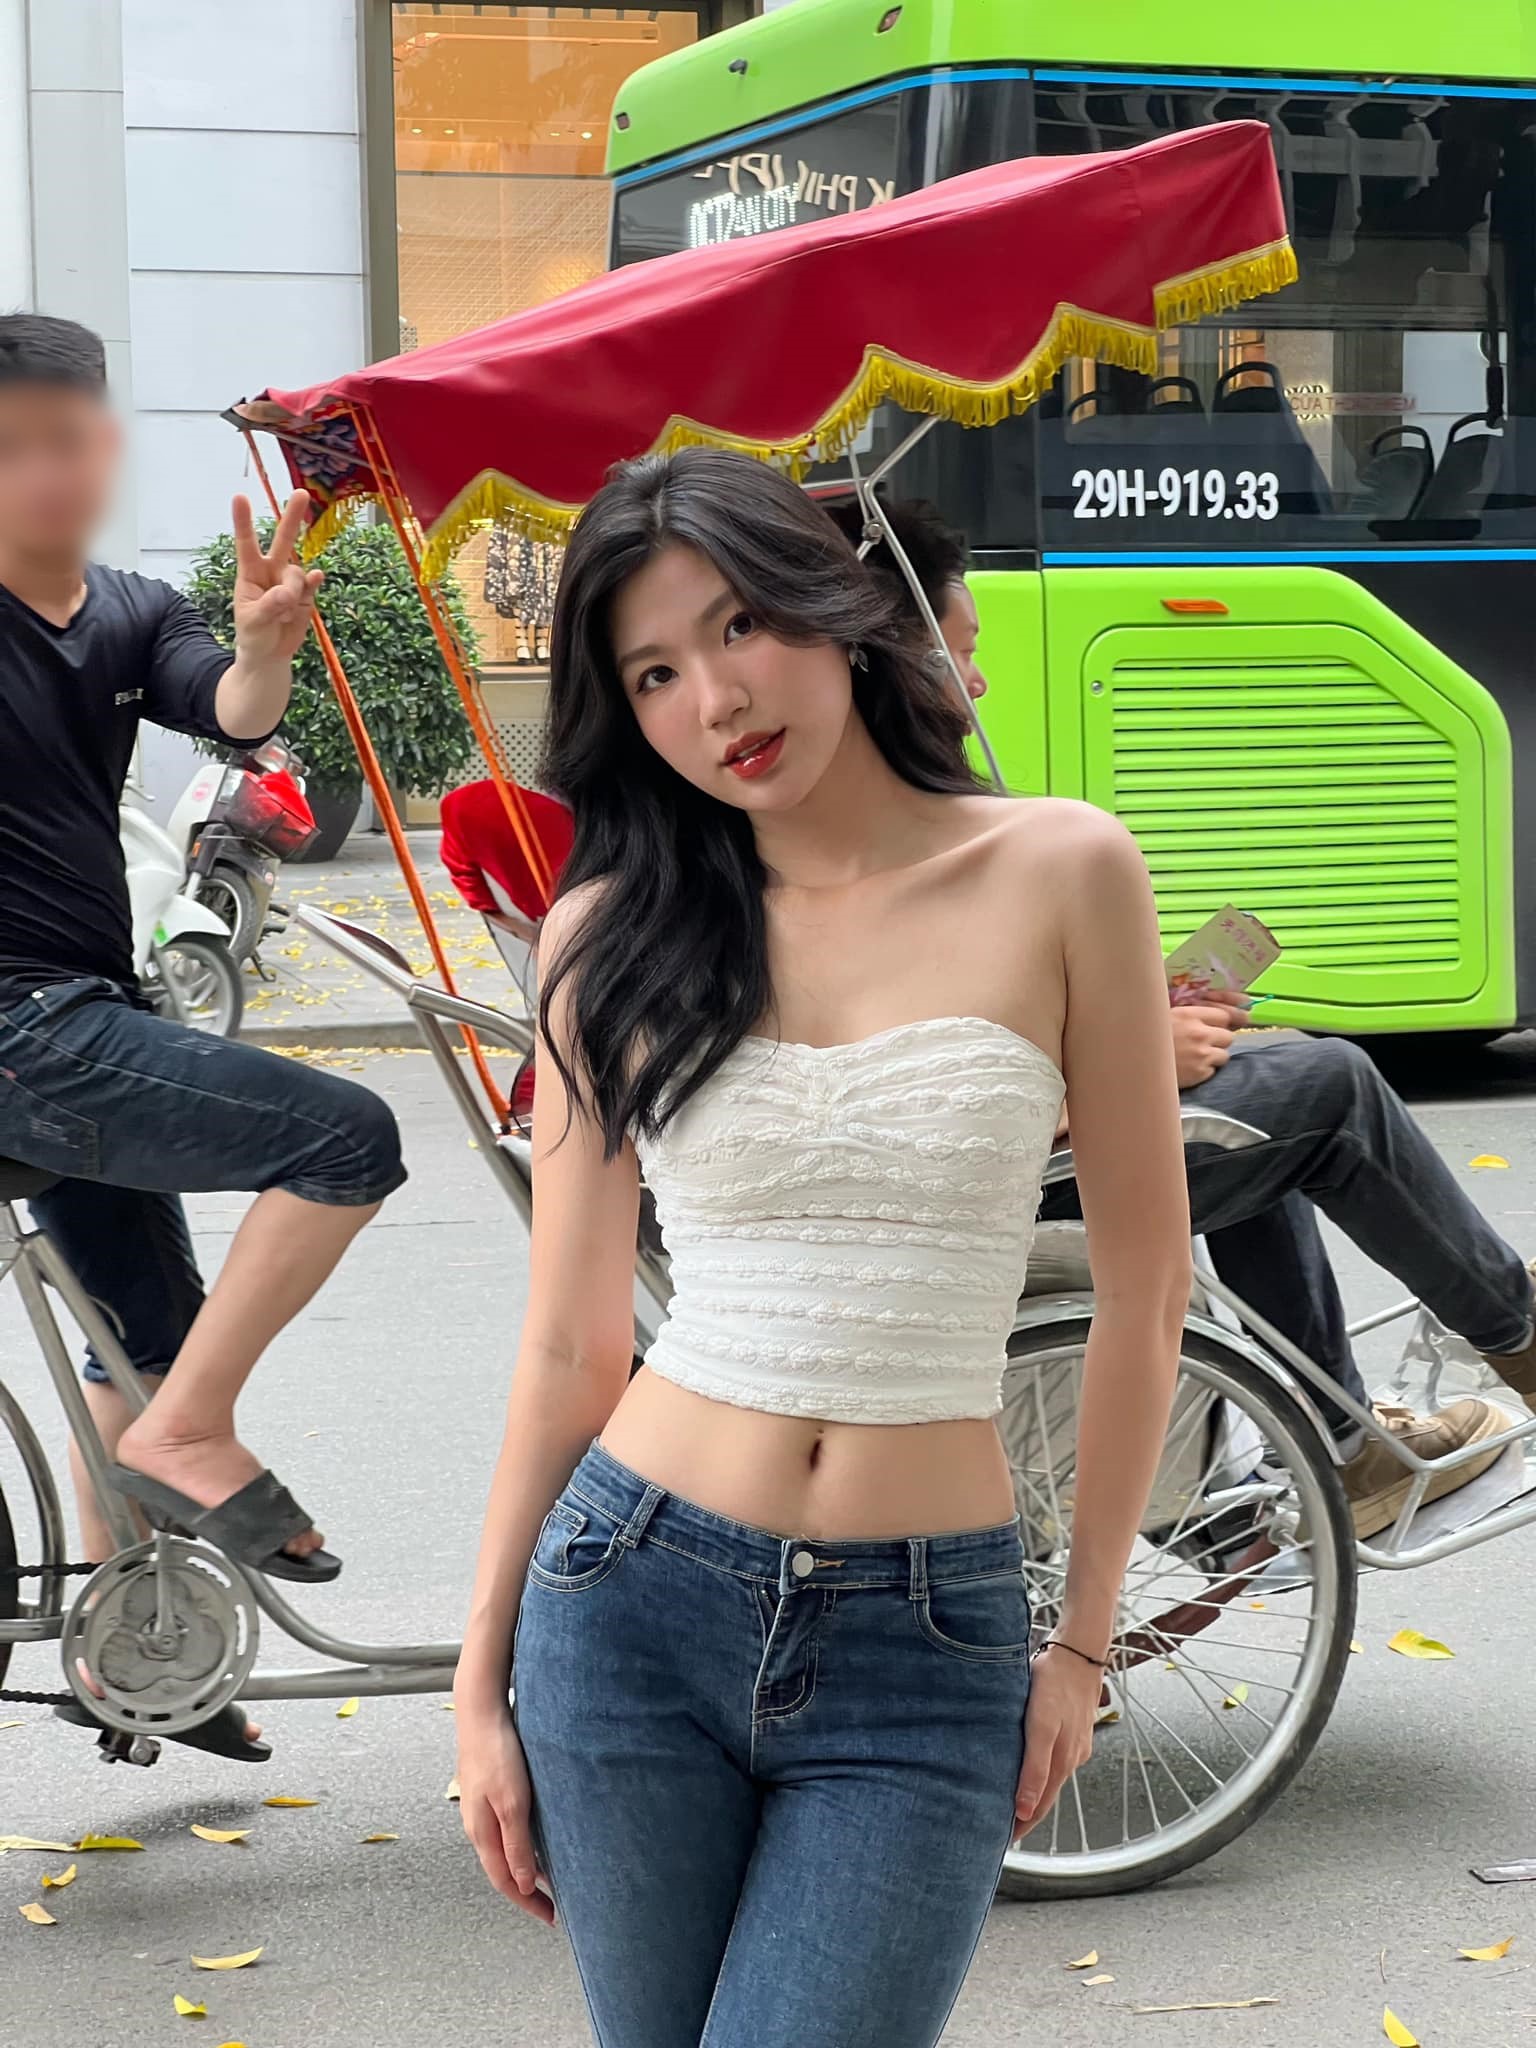 Danh tính cô gái mặc khoe body trên đường phố Hà Nội khiến nhiều người phải ngoái nhìn - 5